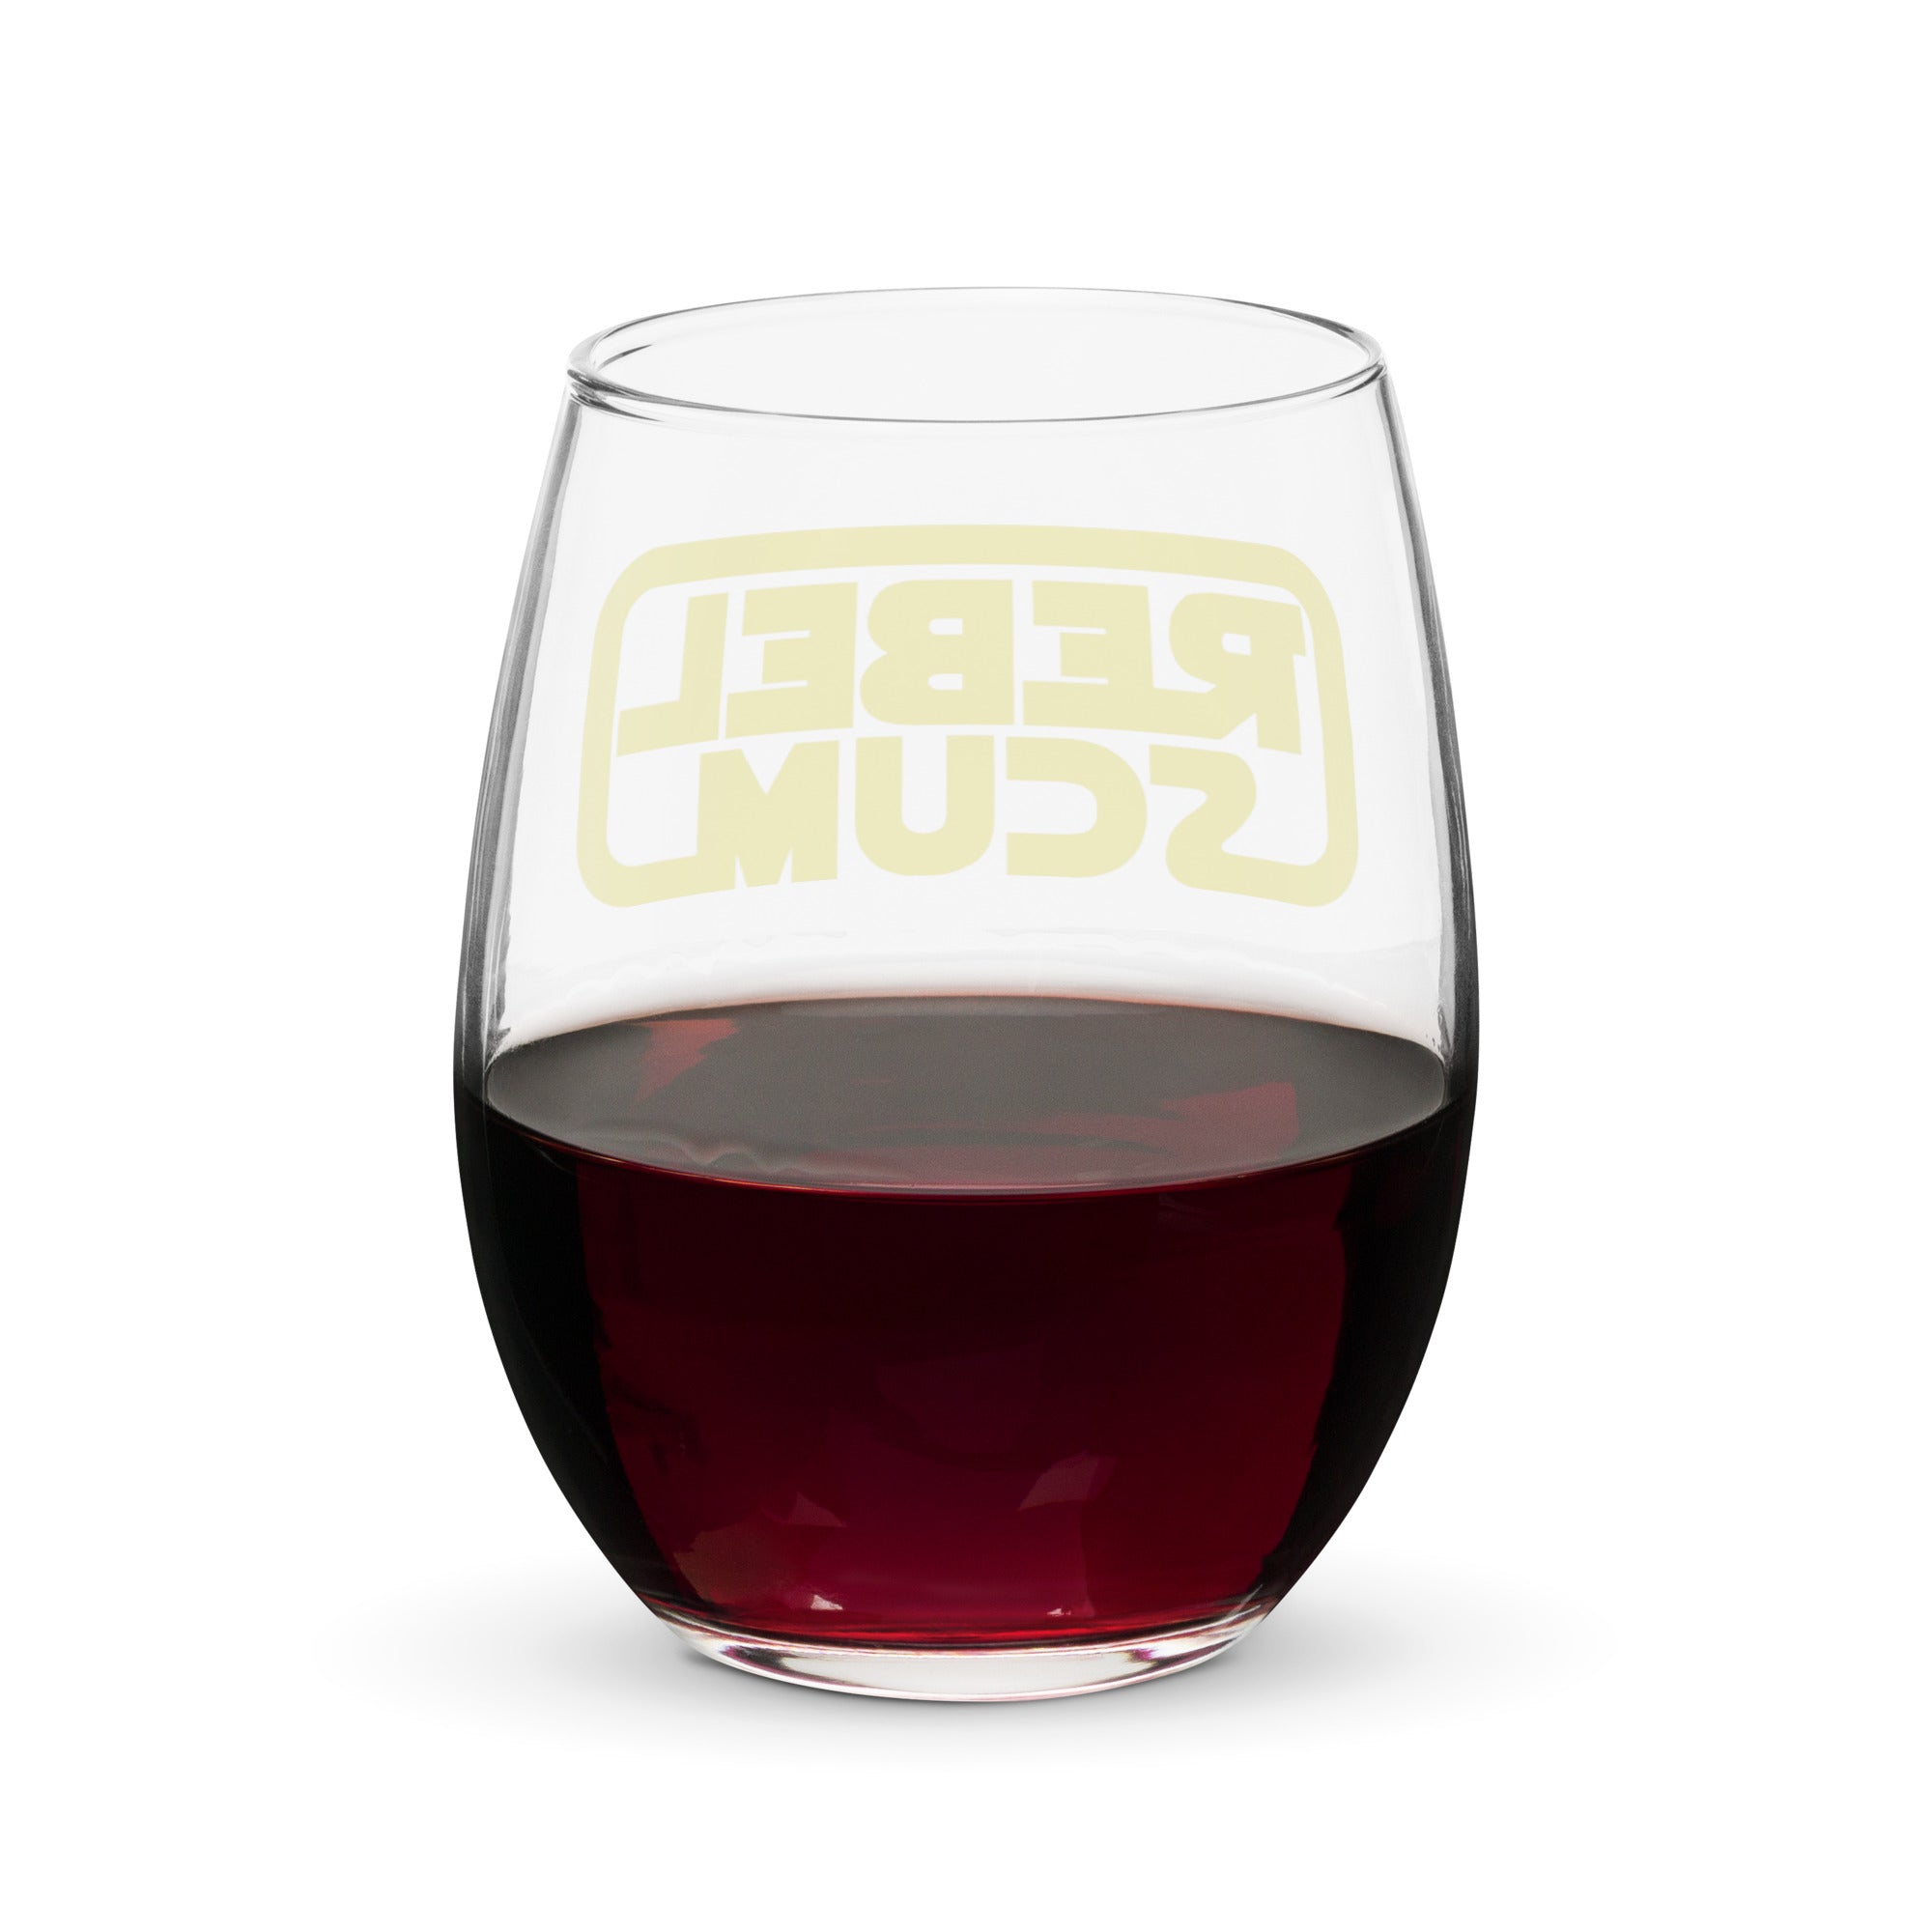 Rebel Scum Stemless Wine Glass